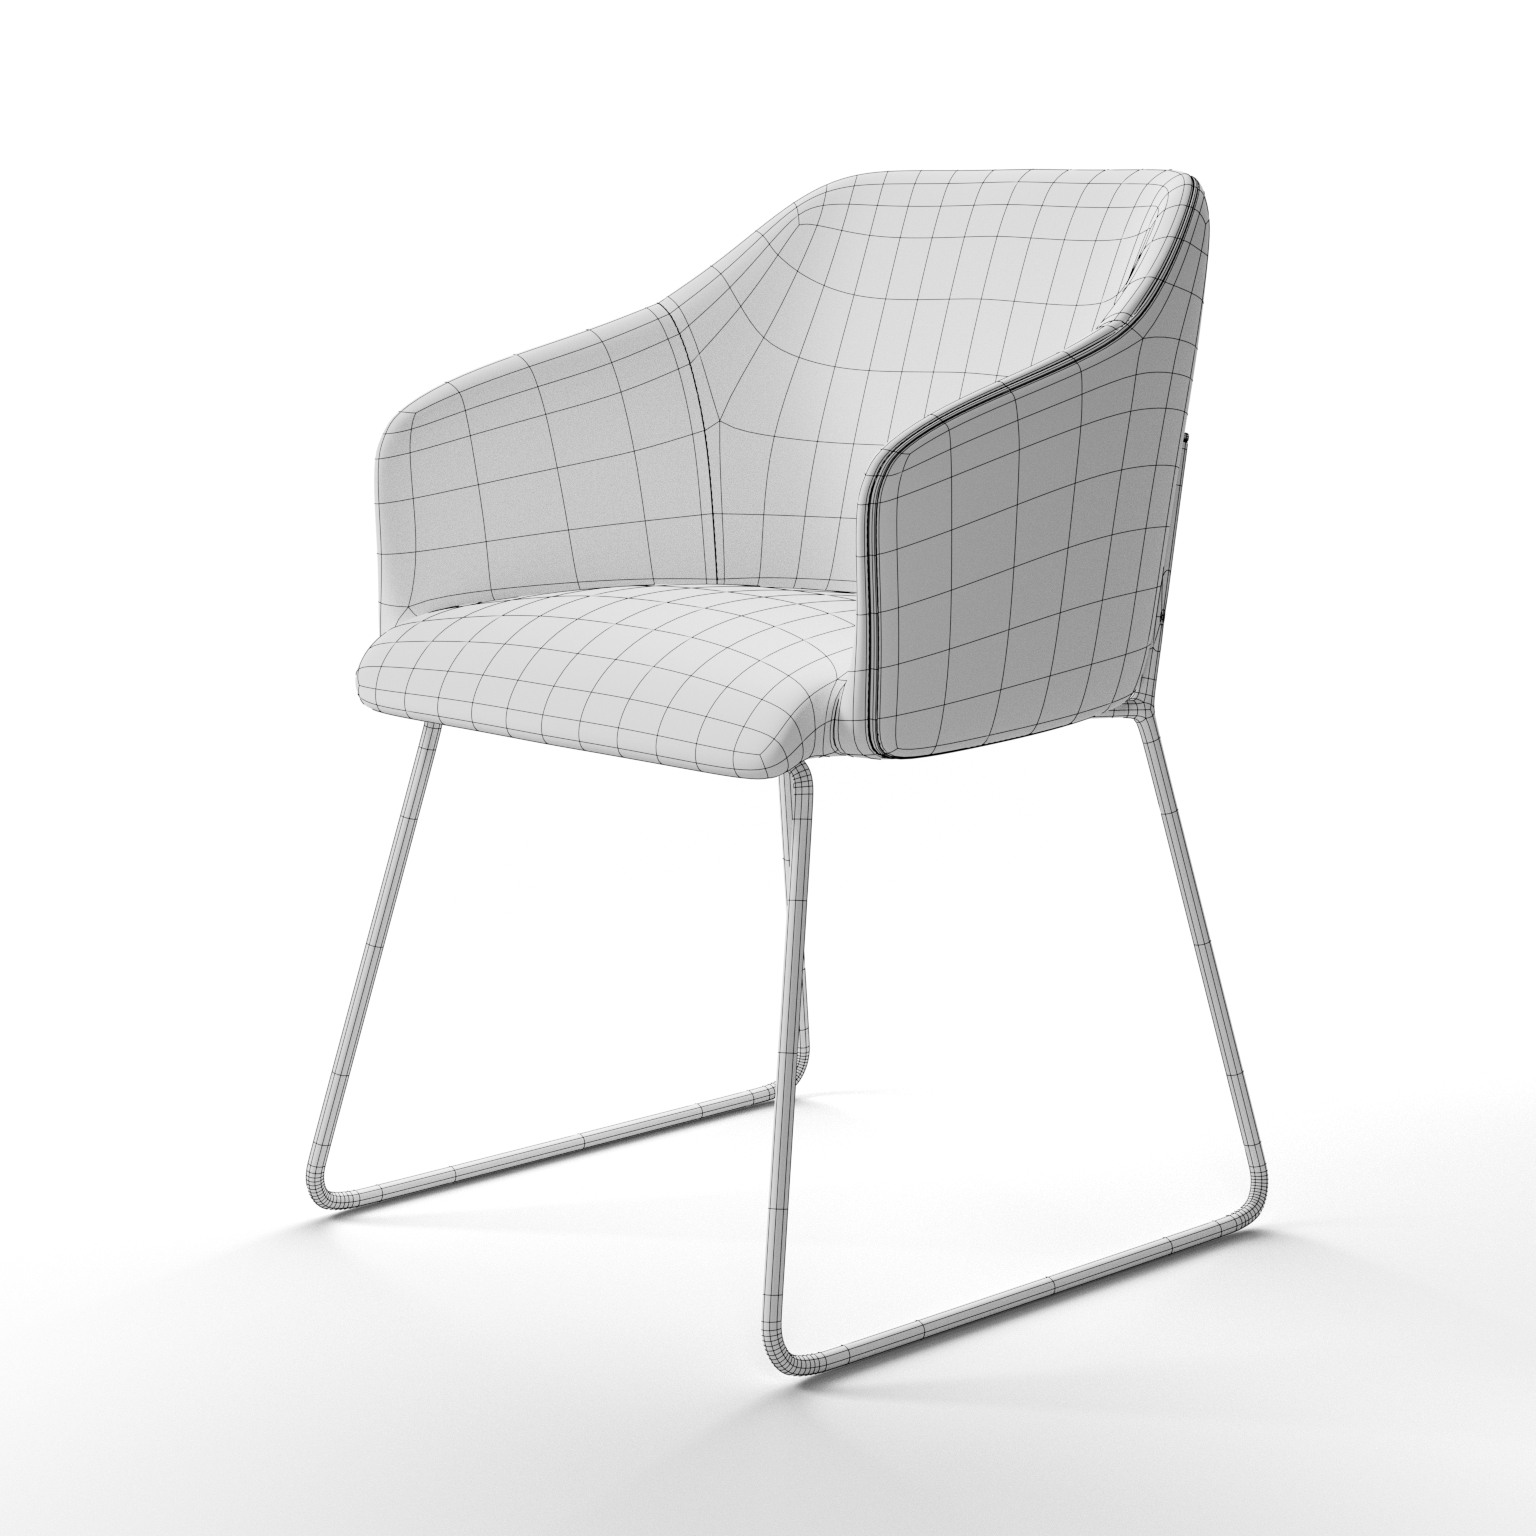 2b-krzesło-modelowanie-3d-packshot-3d-zatarski